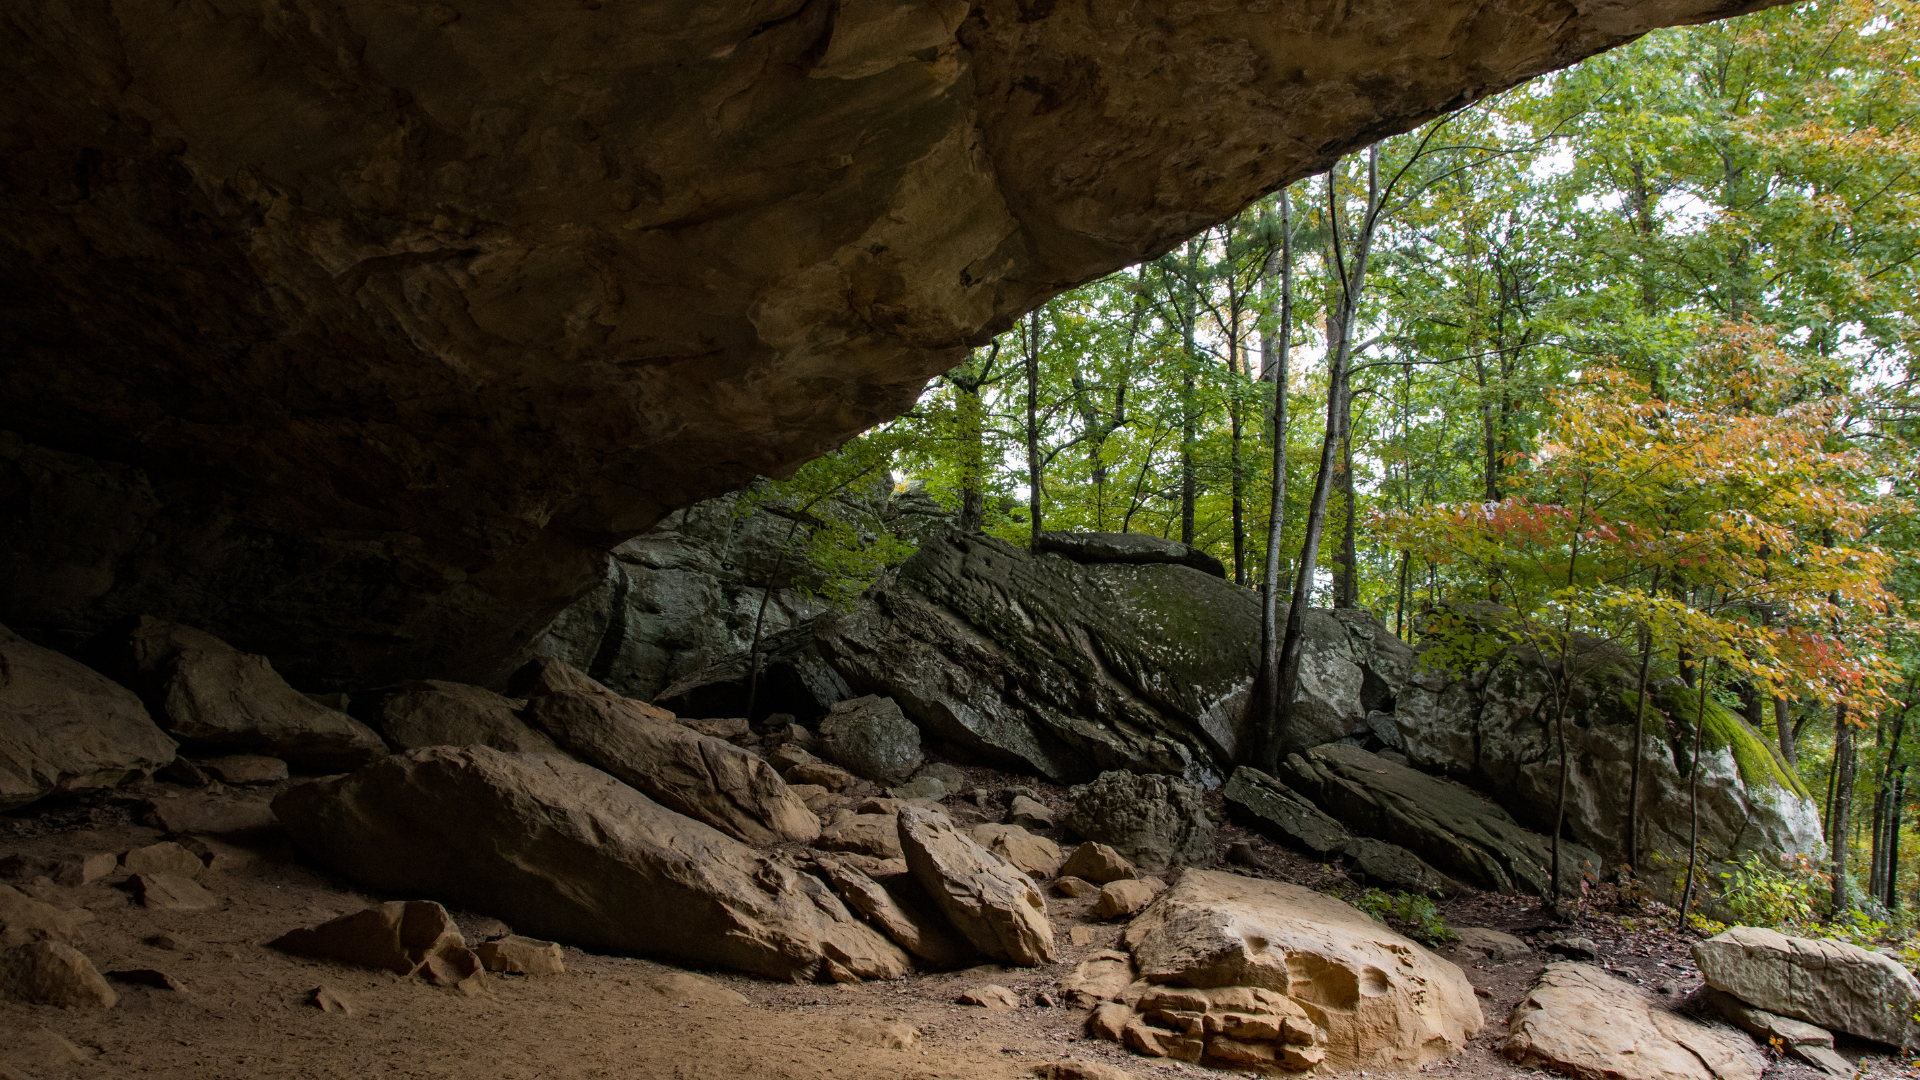 Interior of Arkansas cave